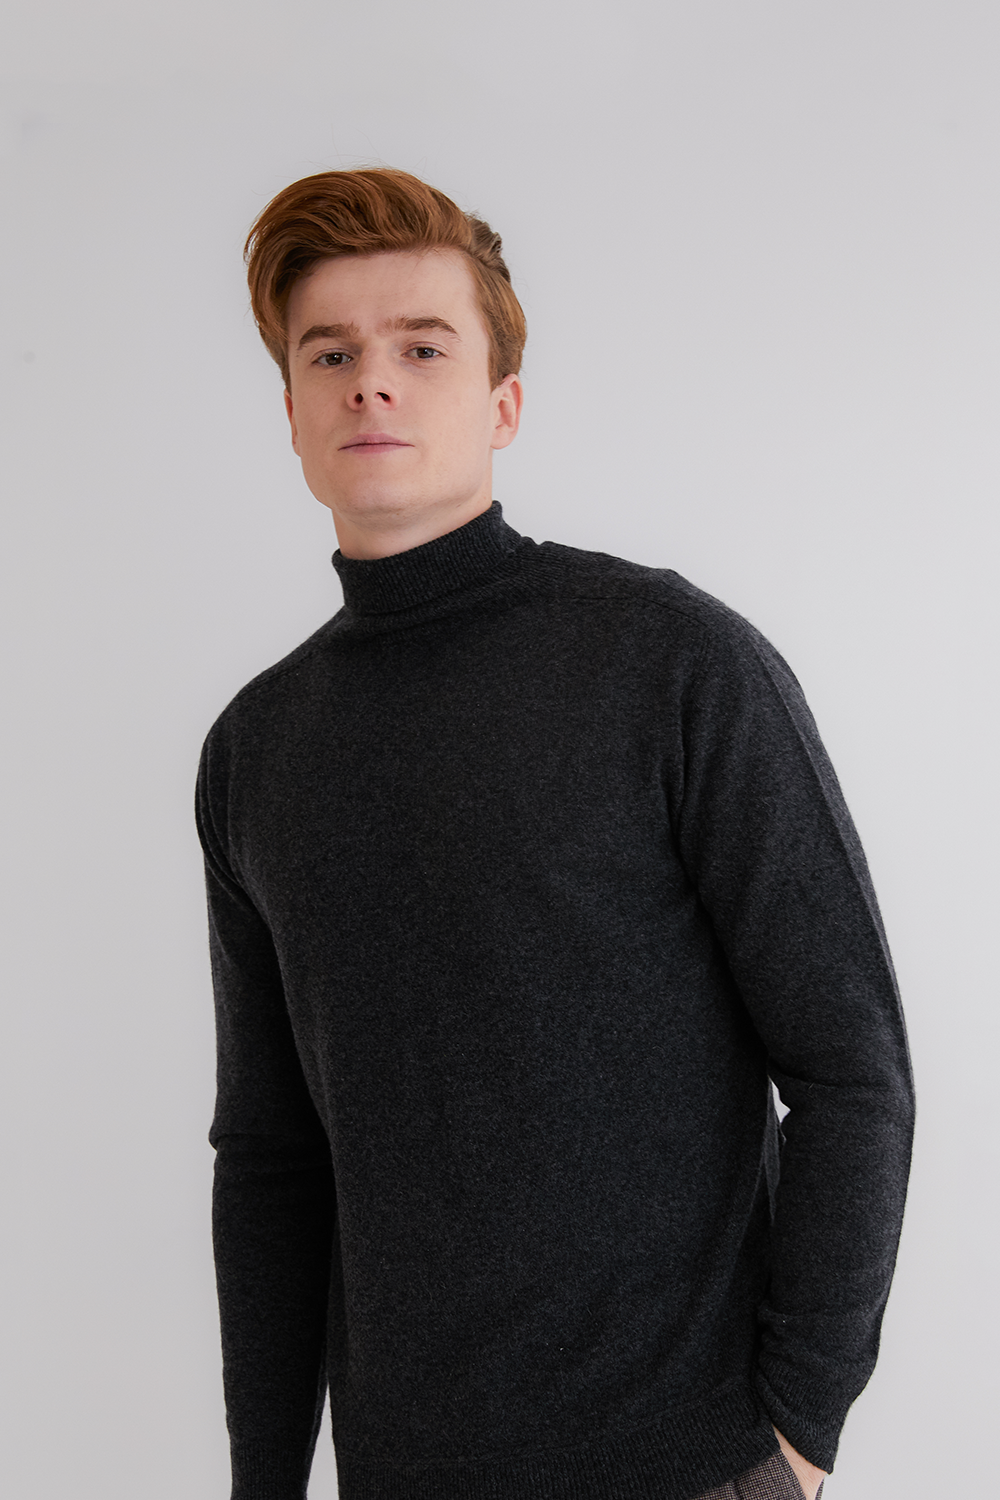 프리미엄 캐시미어 100 남성 스웨터 [Pure cashmere100 turtleneck sweater by whole-garment knitting - Charcoal black]